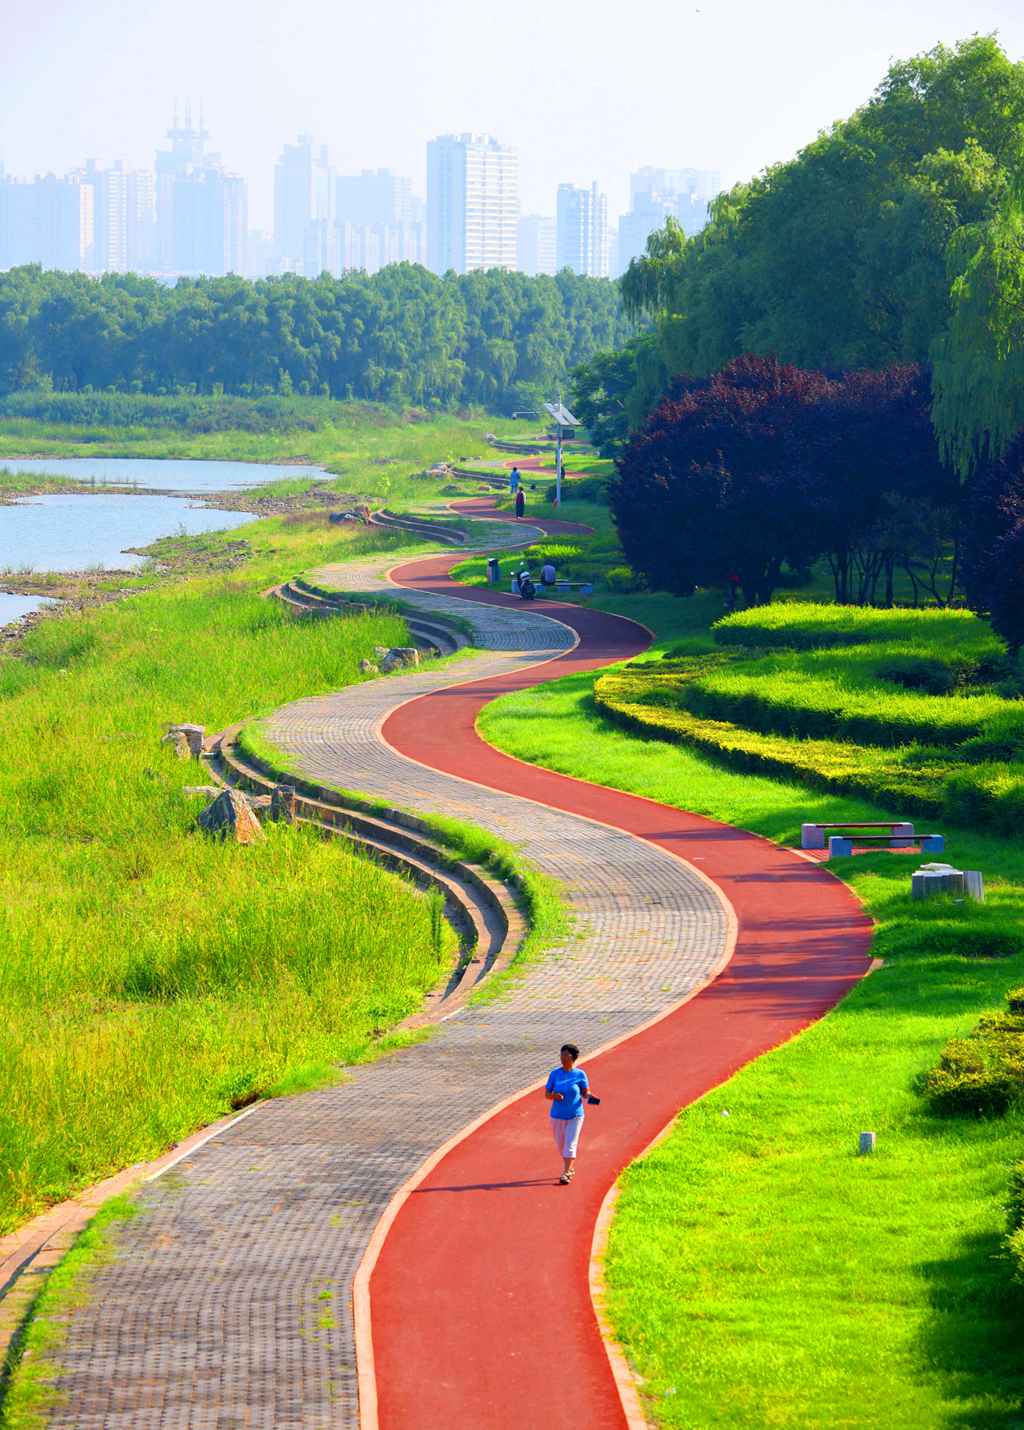 뤄푸(洛浦) 공원 산책길 [사진 출처: 인민망]